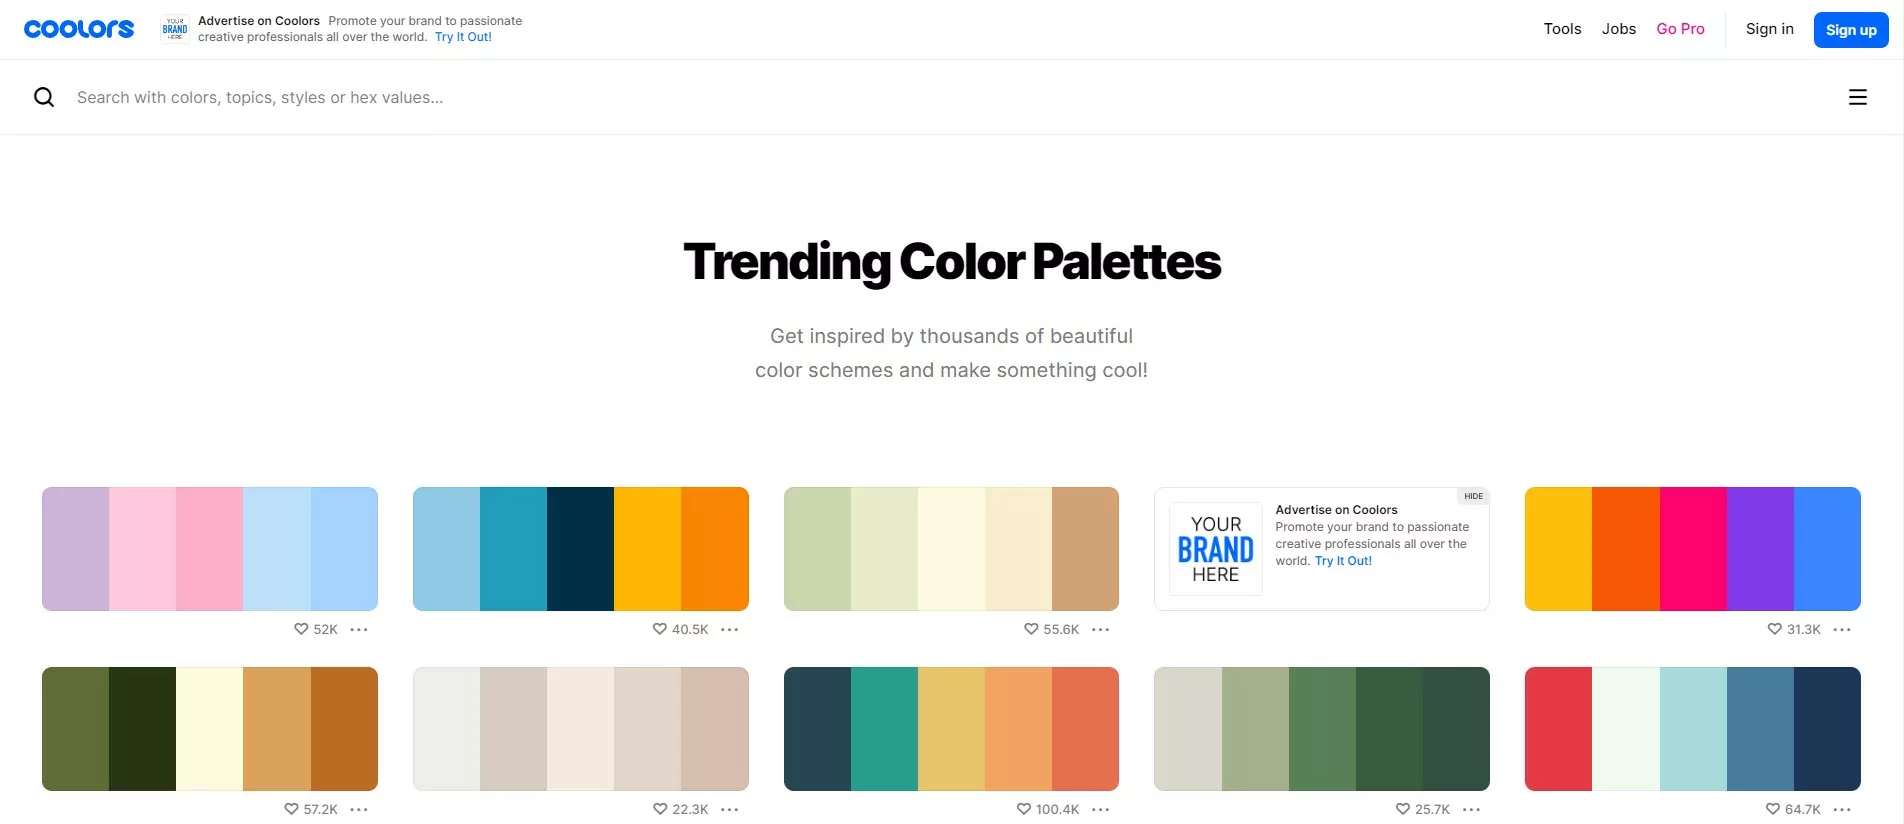 sección-de-paletas-de-colores-en-tendencia-del-sitio-web-coolors